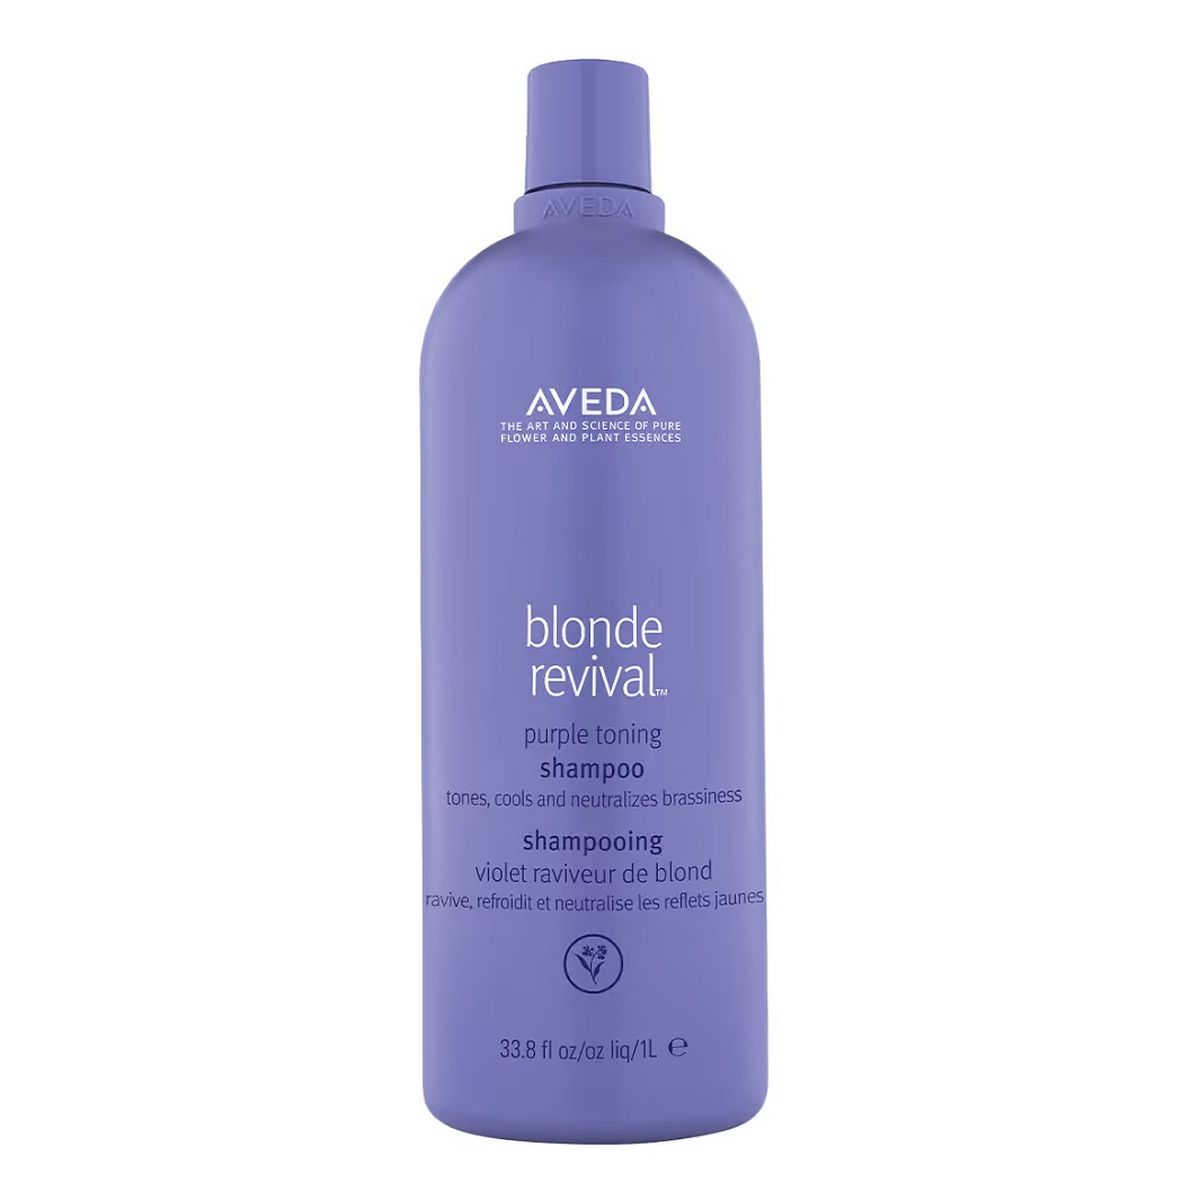 Aveda Blonde revival purple toning shampoo fioletowy szampon tonujący do włosów blond 1000ml